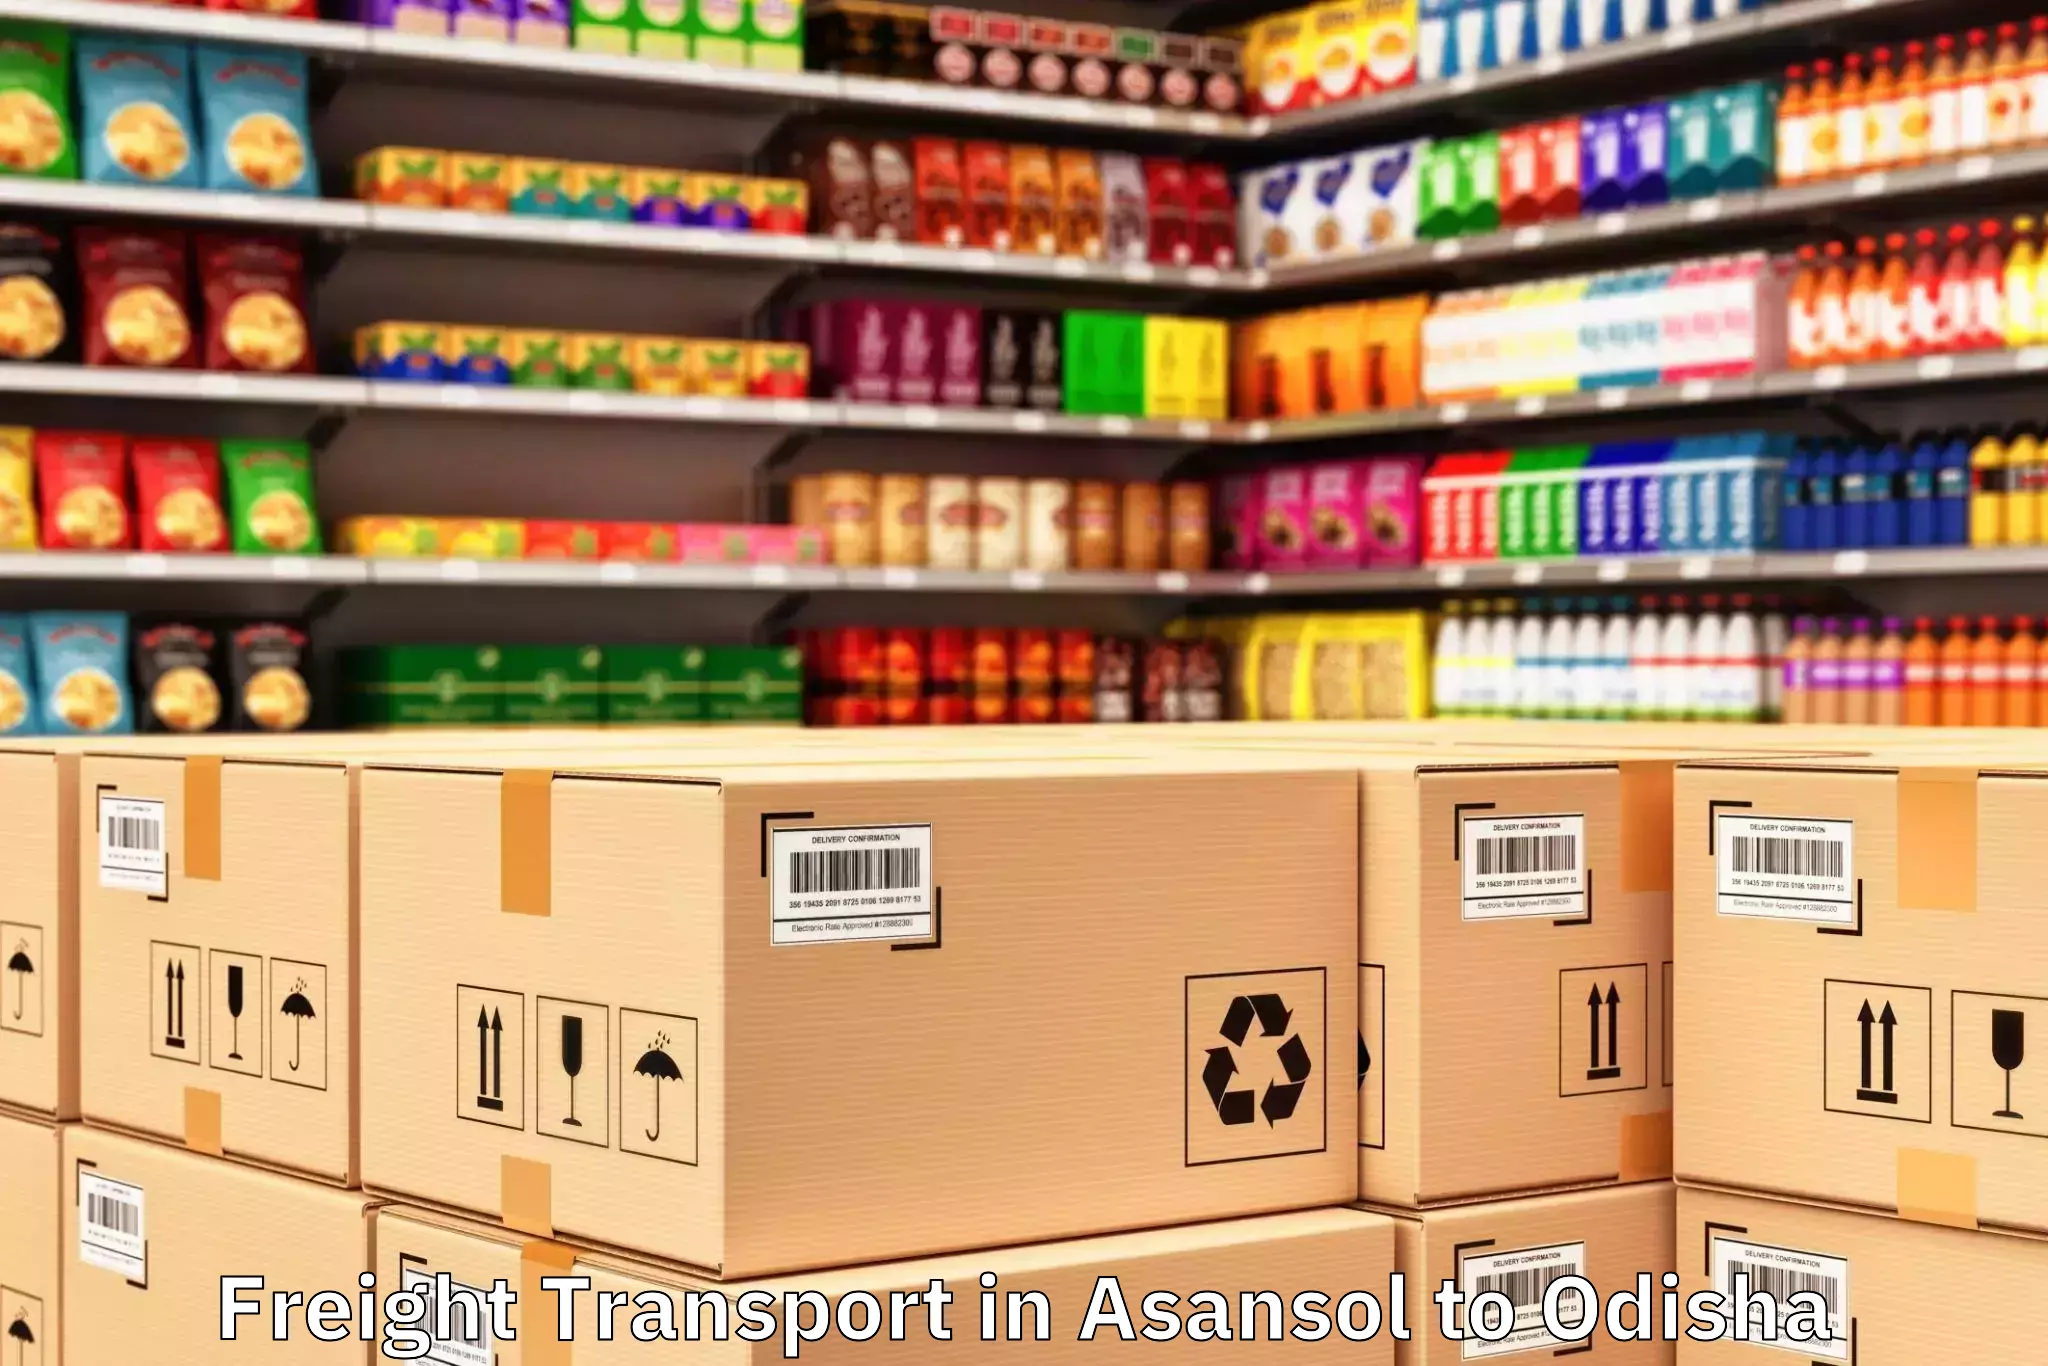 Asansol to Baleswar Freight Transport